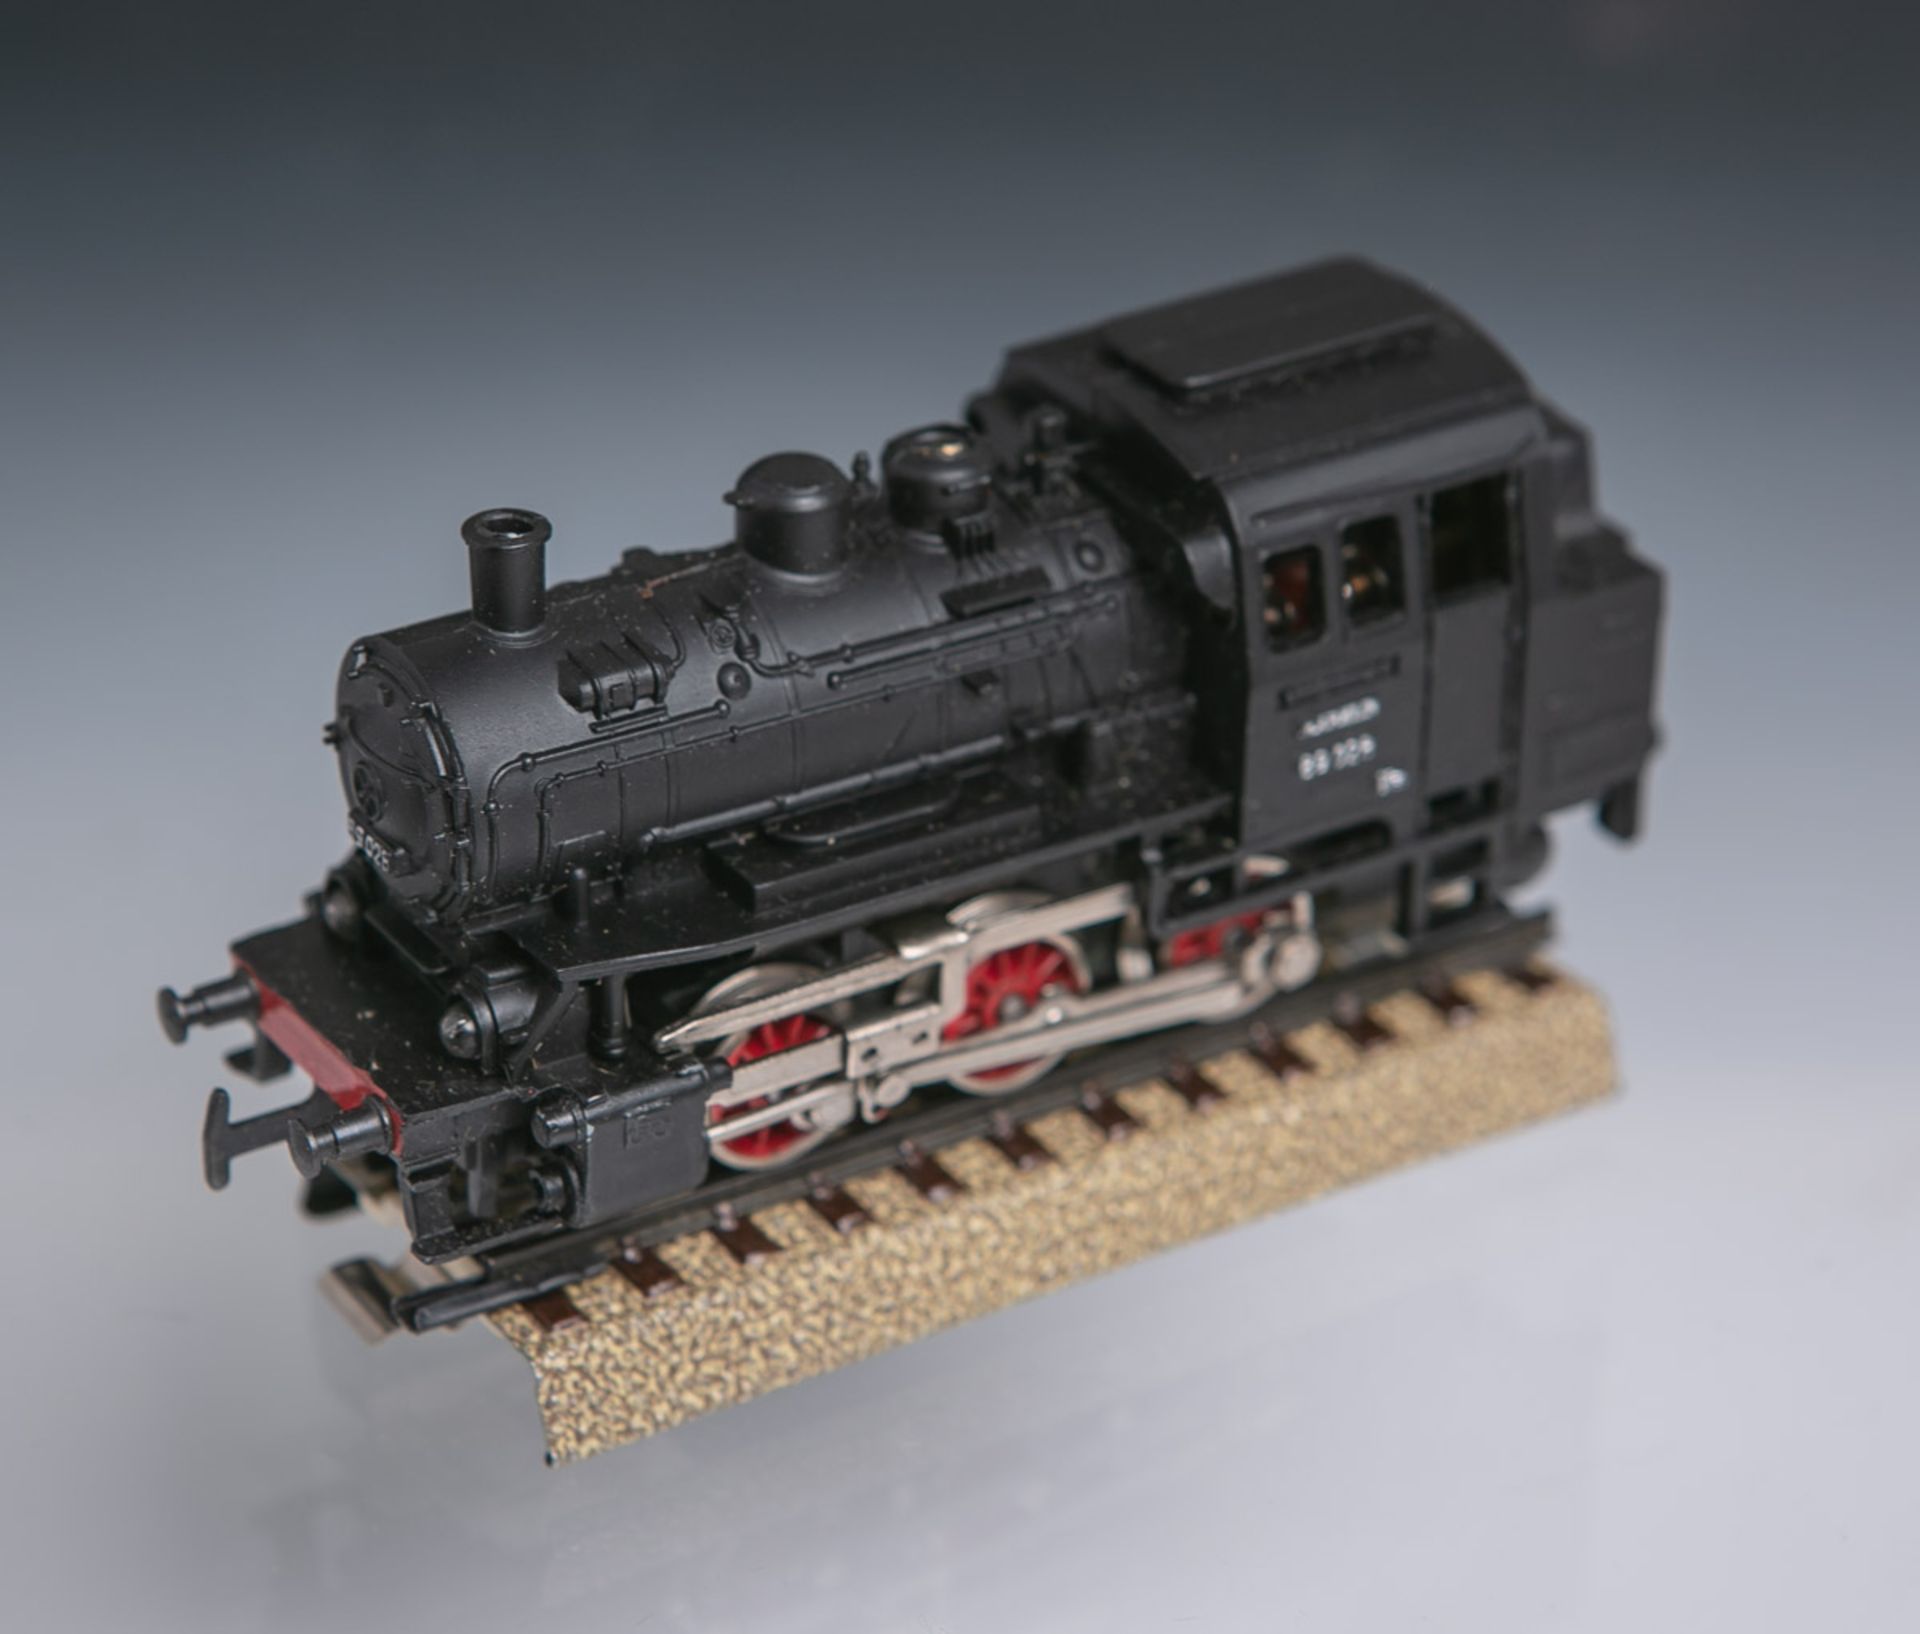 Märklin-Lokomotive "CM 800 89 028" (Deutschland, wohl 20. Jahrhundert), mit zusätzlicher